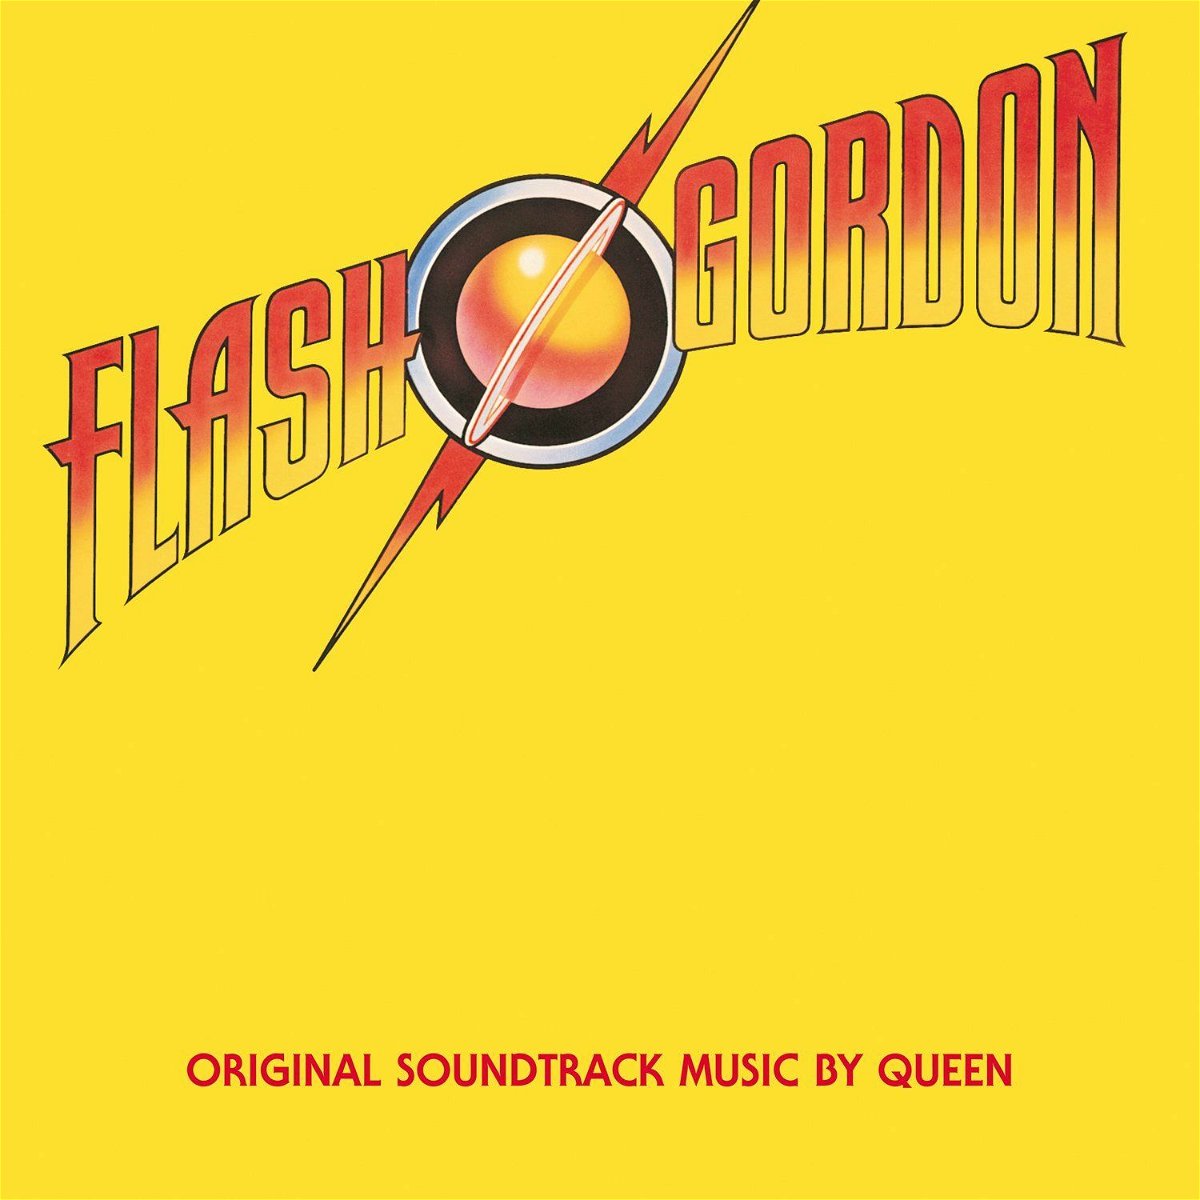 Flash Gordon, l'album dei Queen del 1980